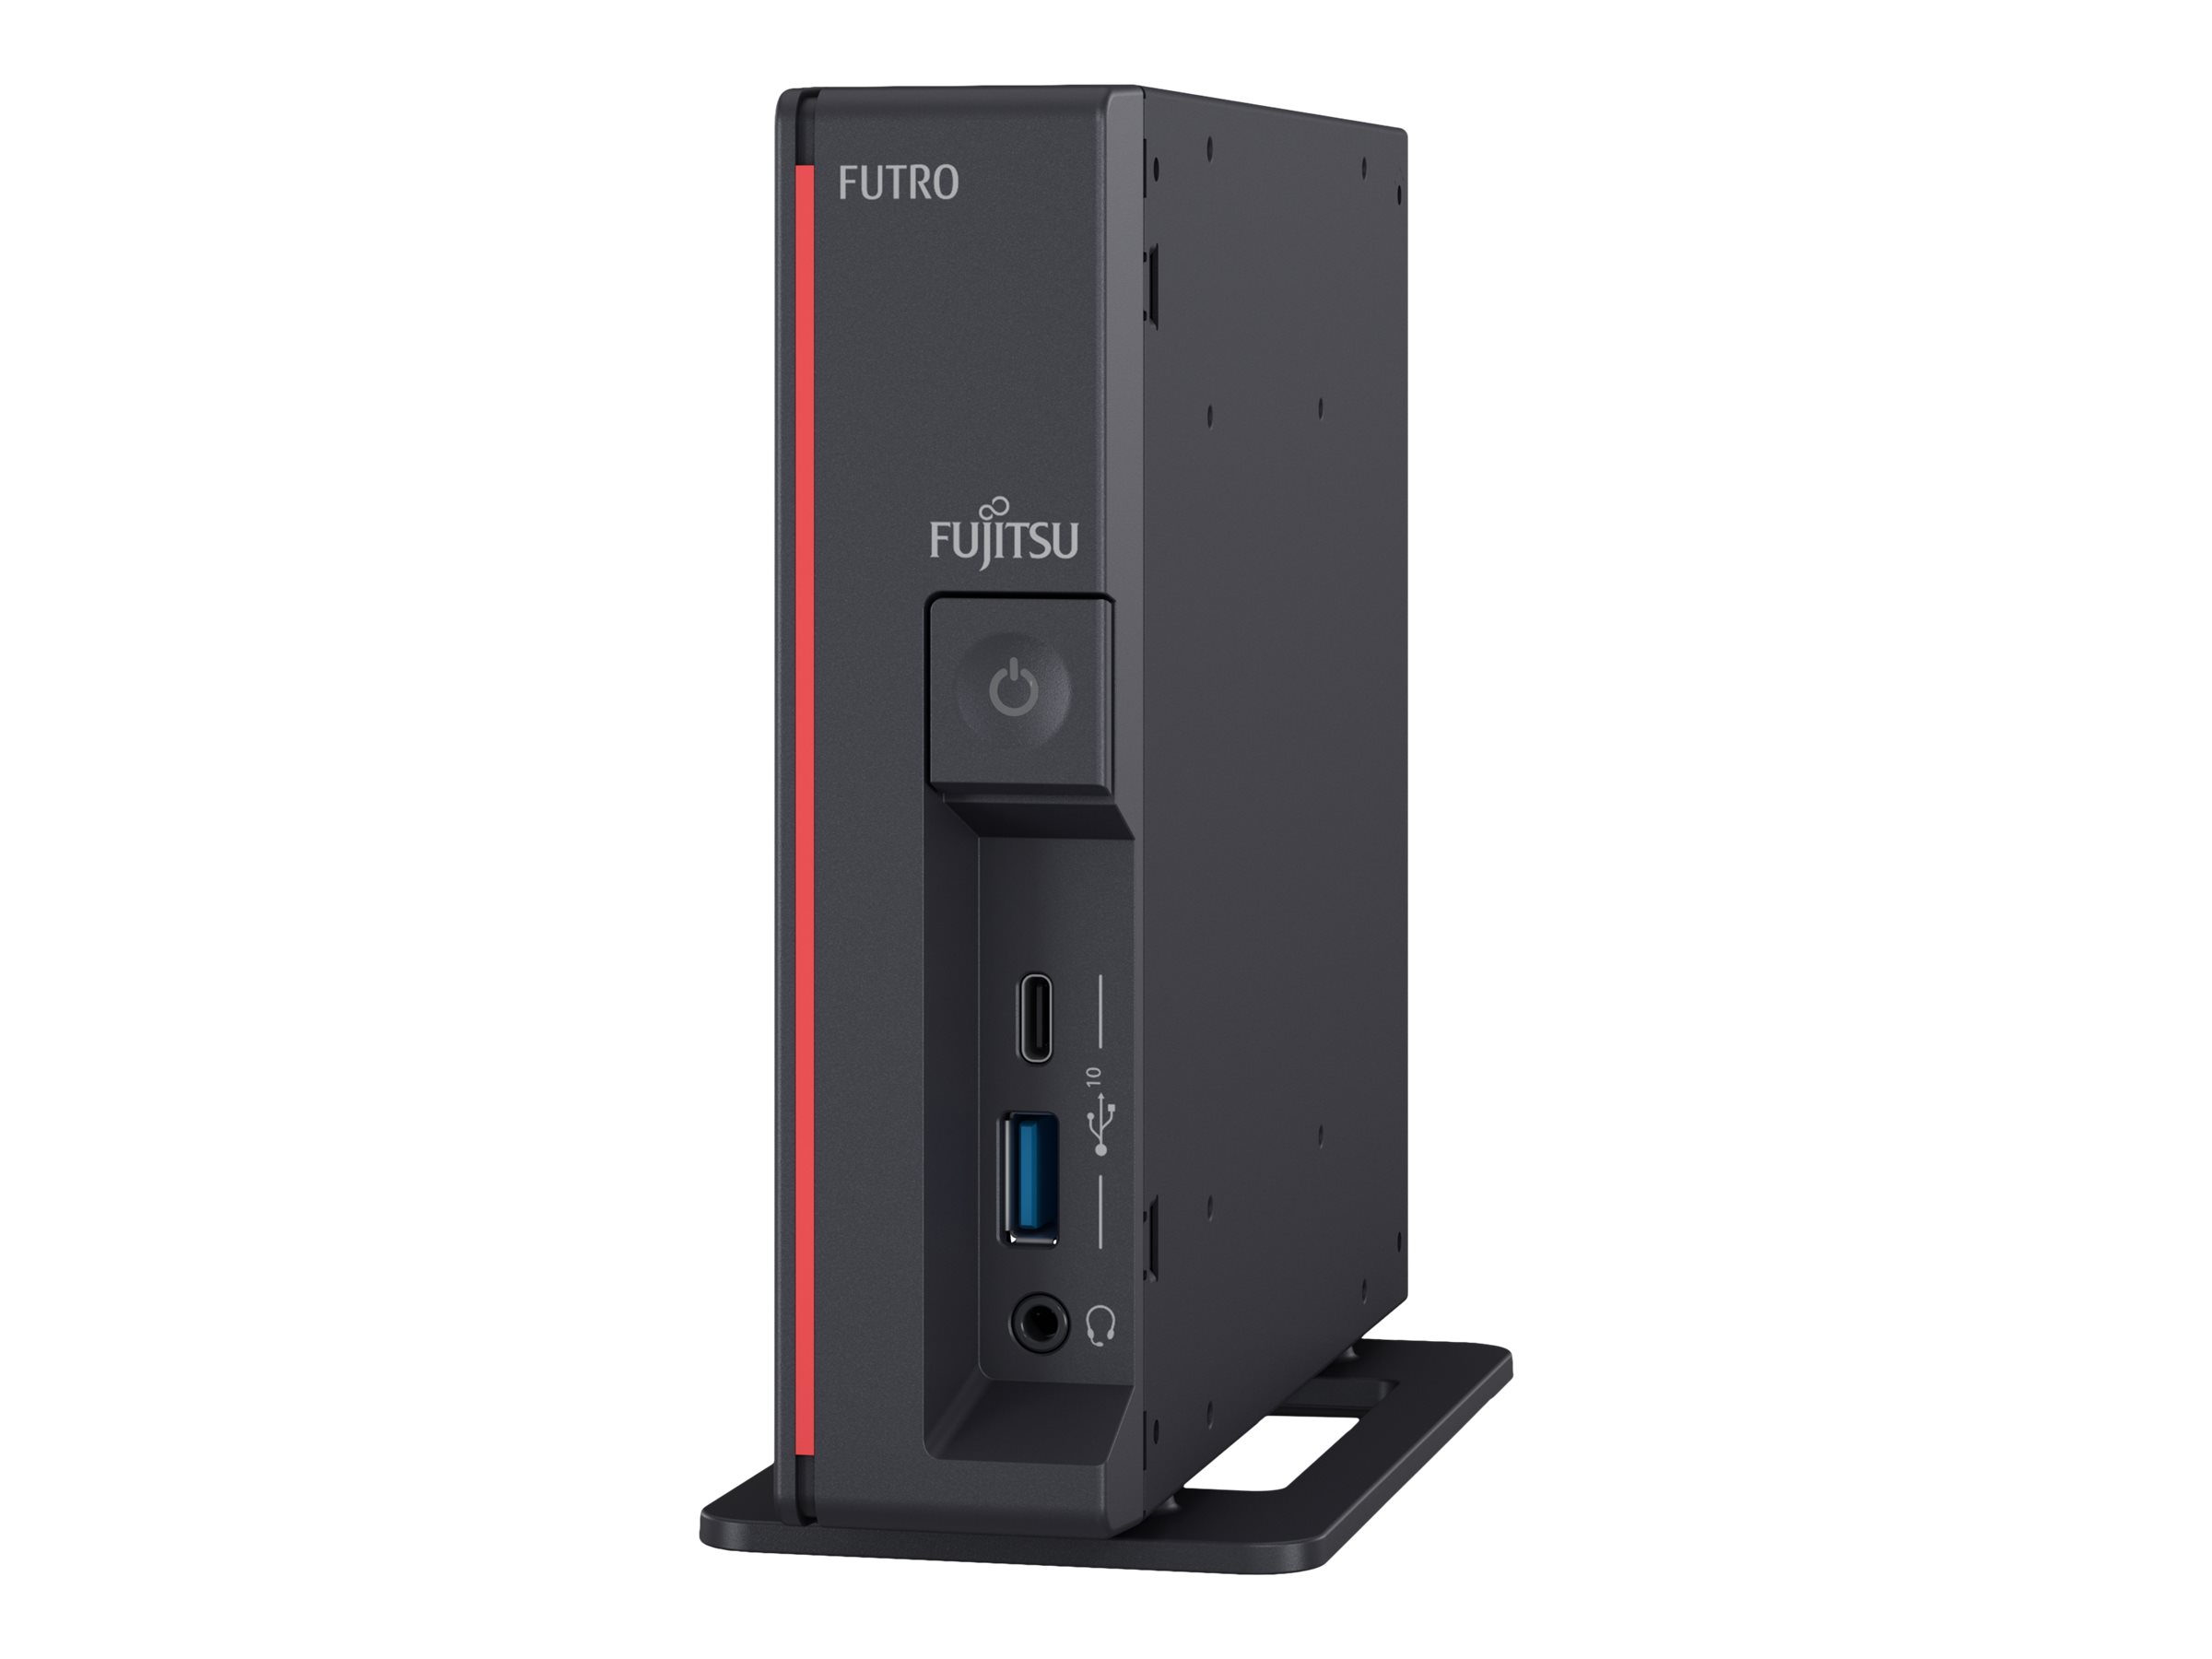 Fujitsu FUTRO S5011 - Thin Client - USFF - 1 x Ryzen Embedded R1305G / 1.5 GHz - RAM 8 GB - SSD 64 GB